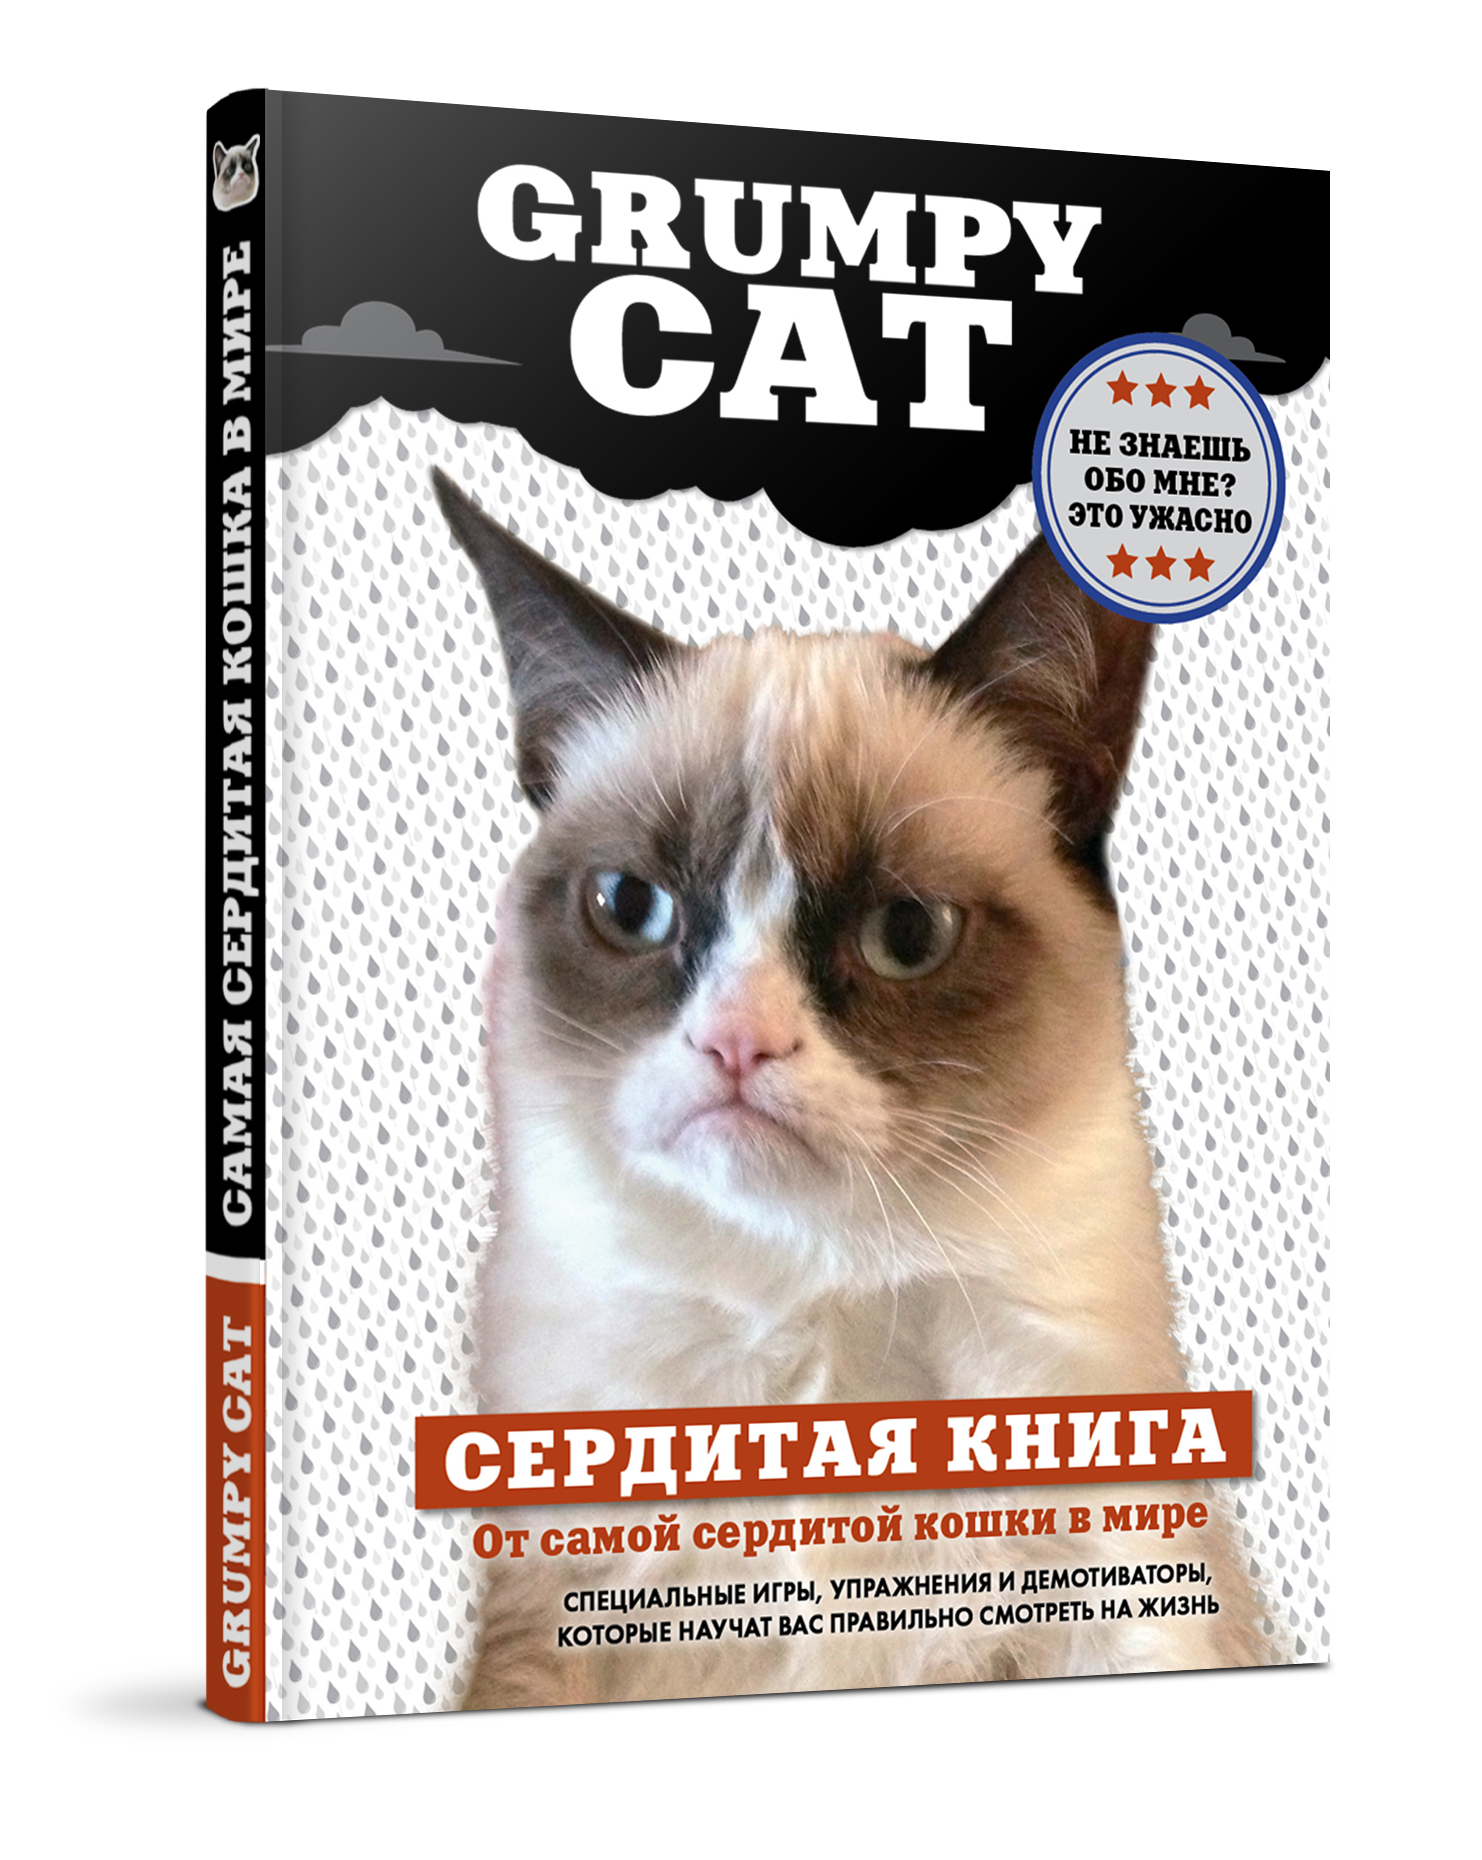 Книга "Grumpy Cat. Сердитая книга от самой сердитой кошки в мире" - купить книгу Grumpy Cat: A Grumpy Book ISBN 978-5-699-64514-5 с доставкой по почте в интернет-магазине OZON.ru